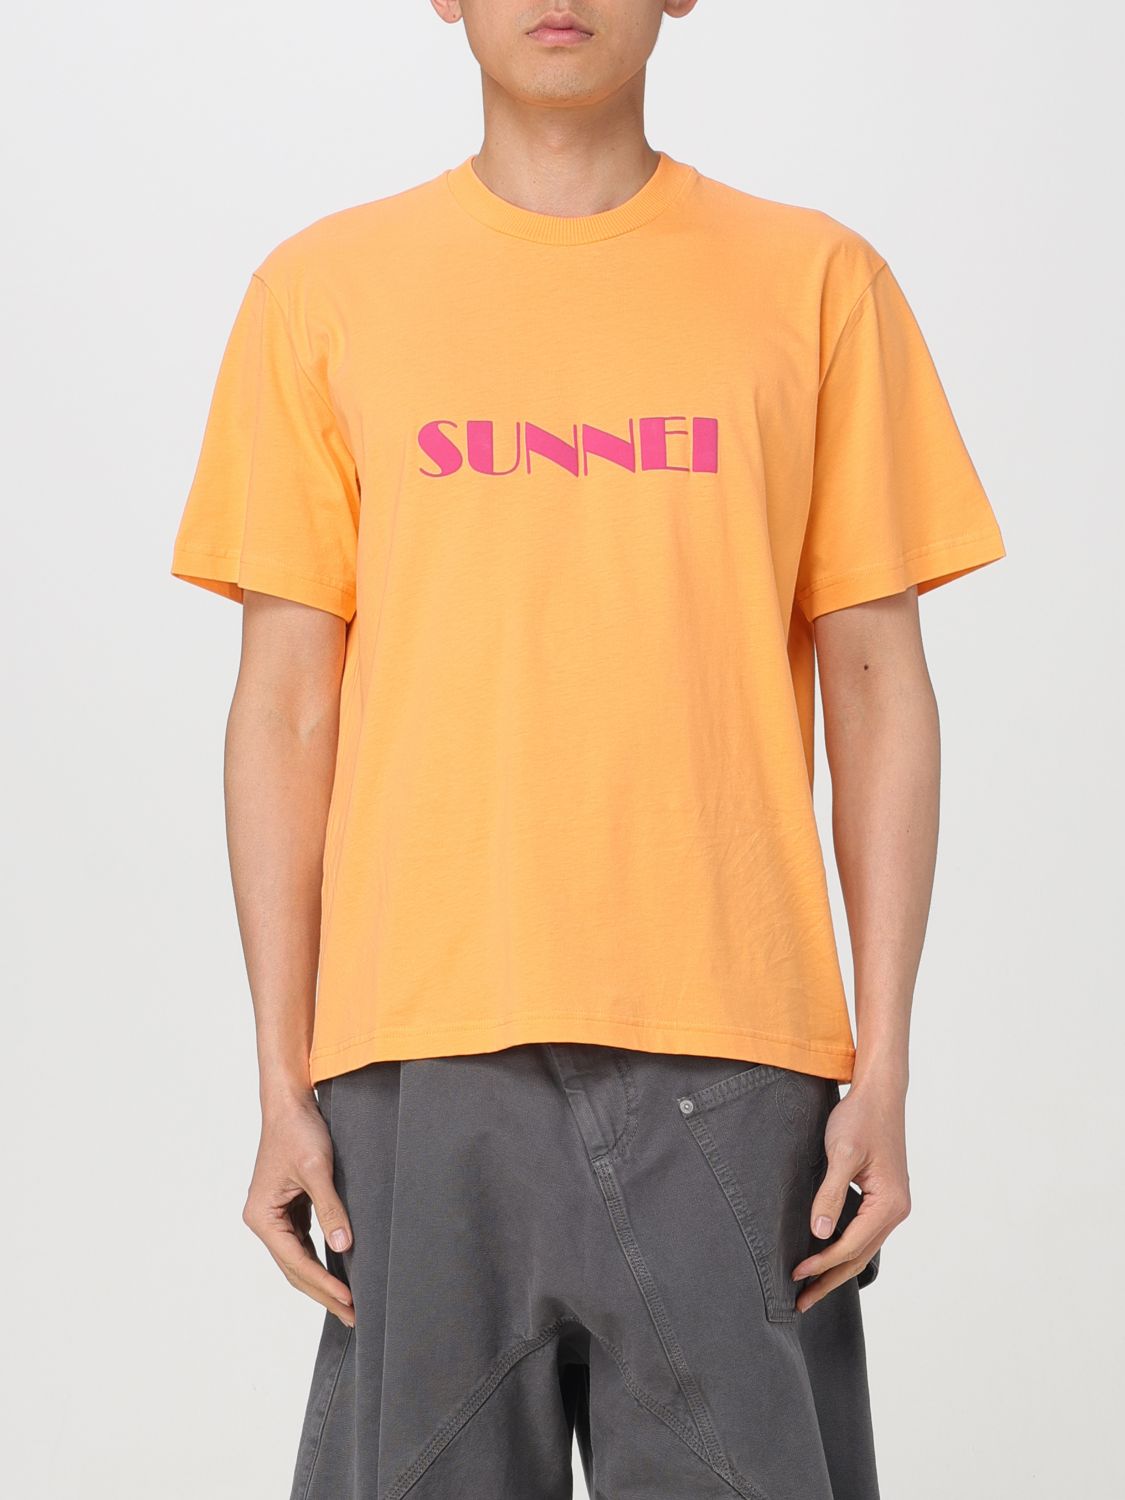 Sunnei T-shirt  Men Colour Peach